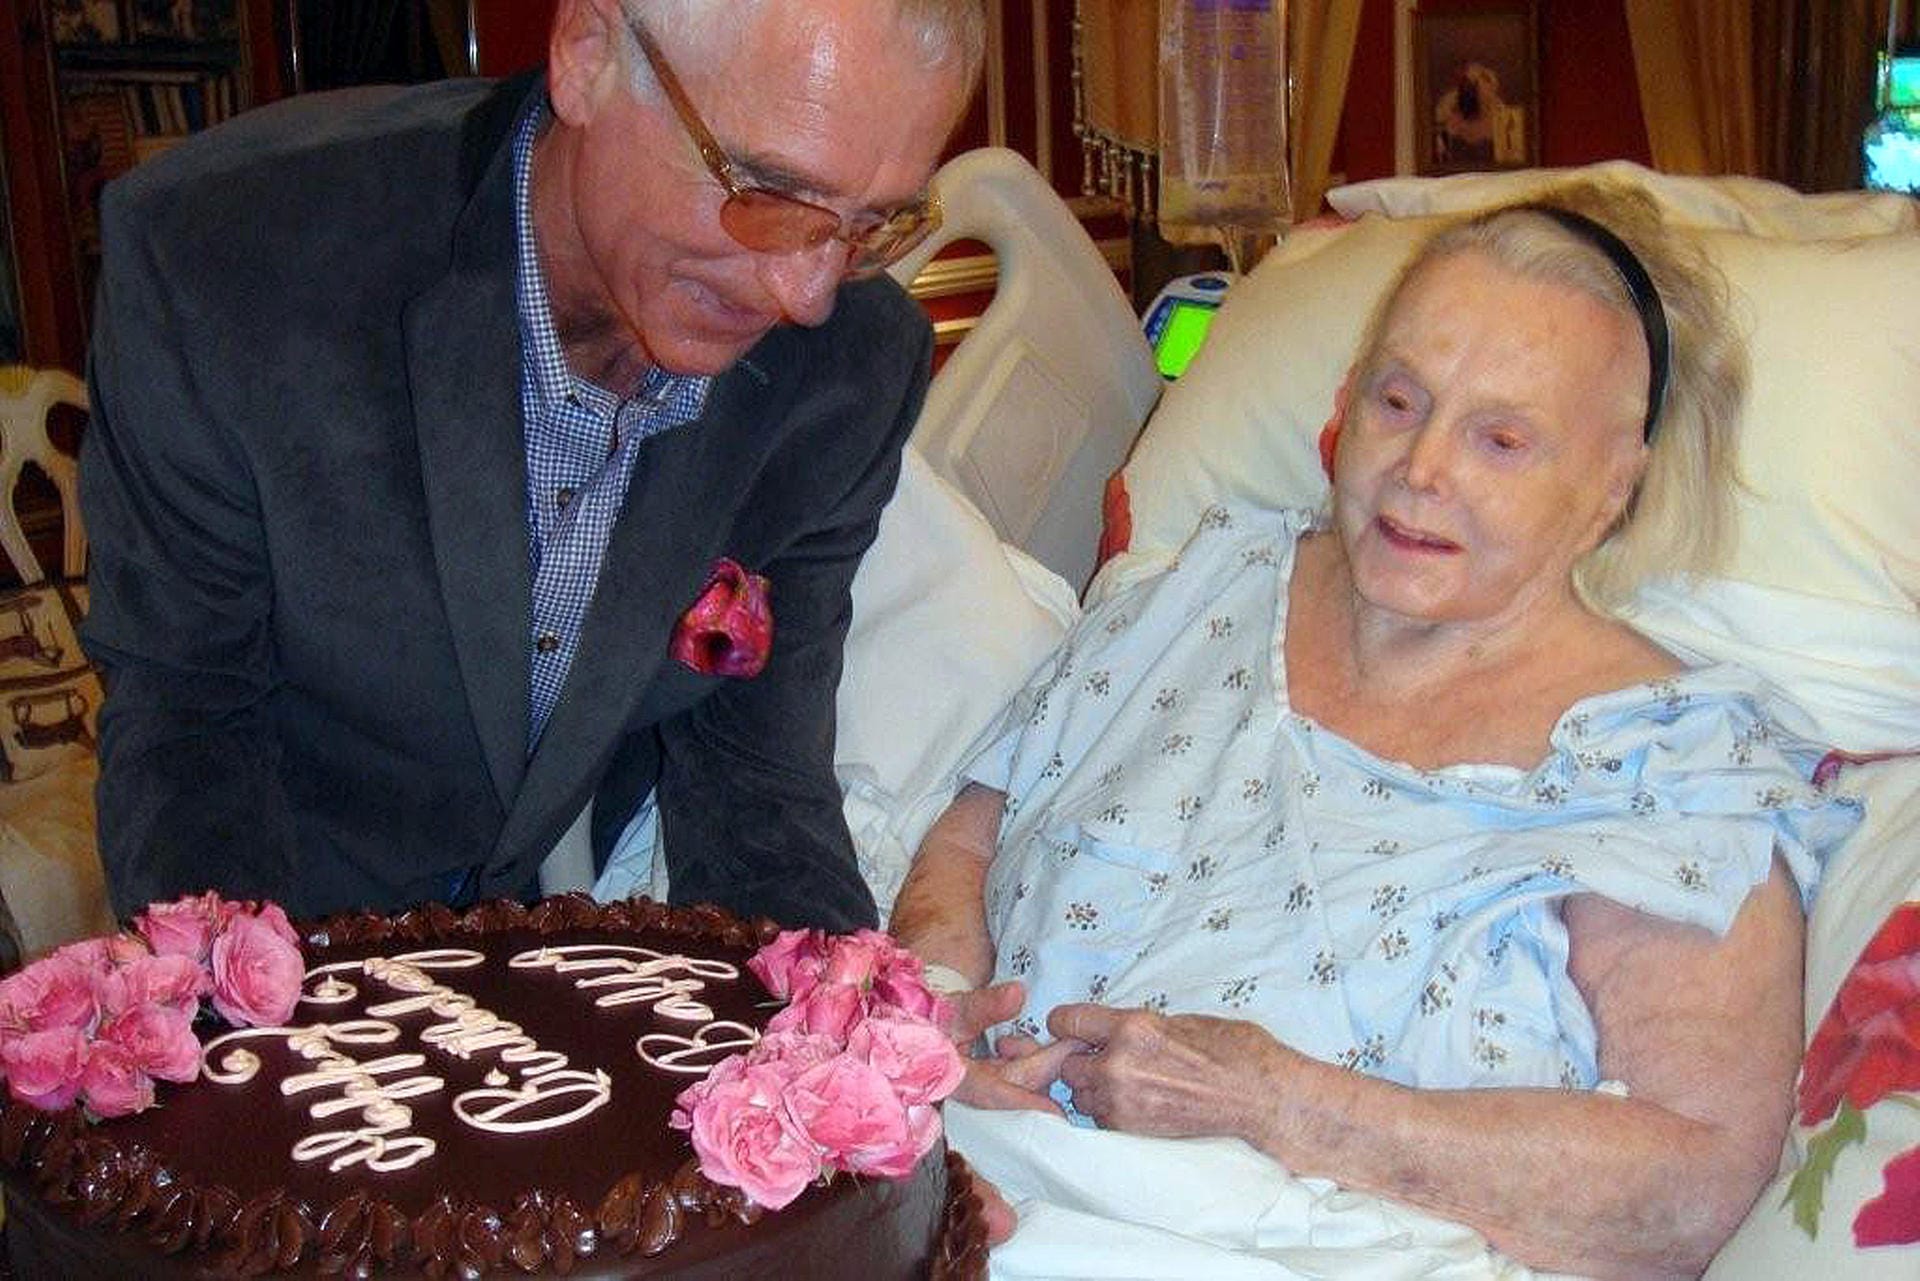 Frédéric Prinz von Anhalt stellt seiner Frau am 6. Februar 2011 in ihrer Villa in Los Angeles eine Geburtstagstorte zum 94. Geburtstag ans Krankenbett.